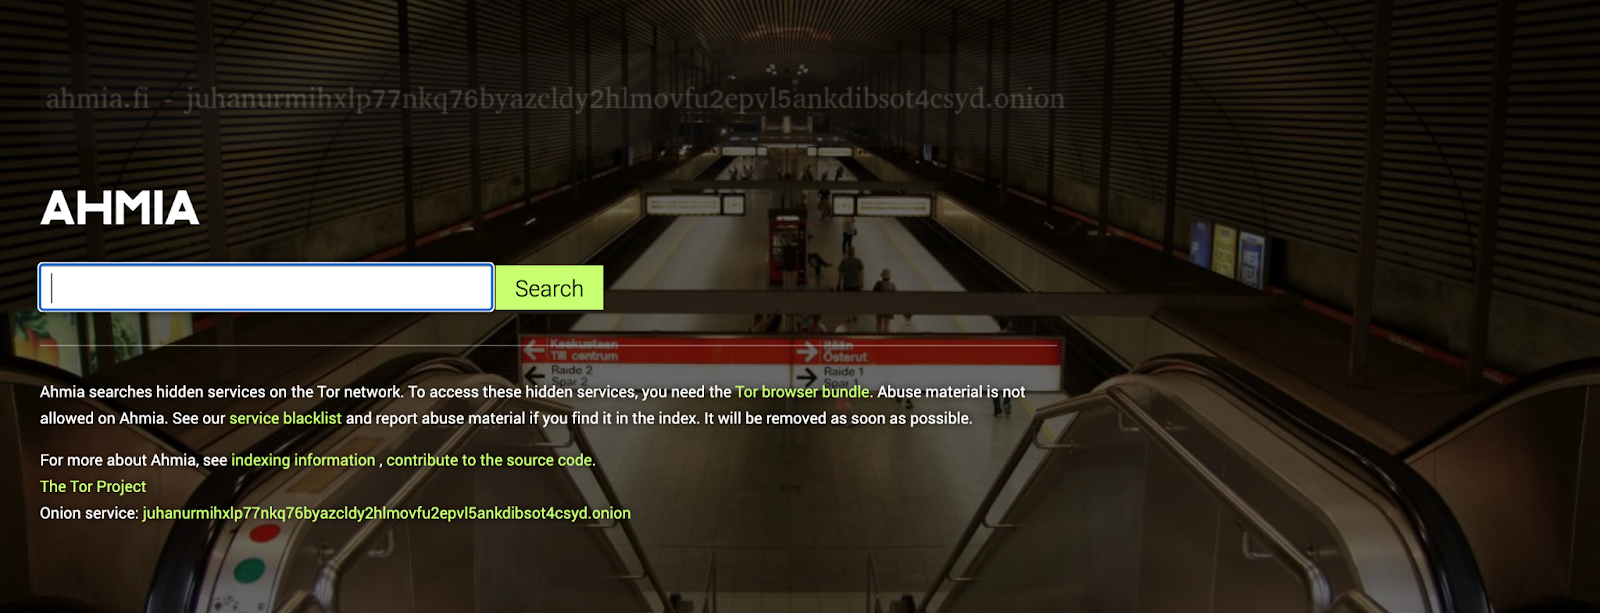 Captura de tela do Ahmia na dark web